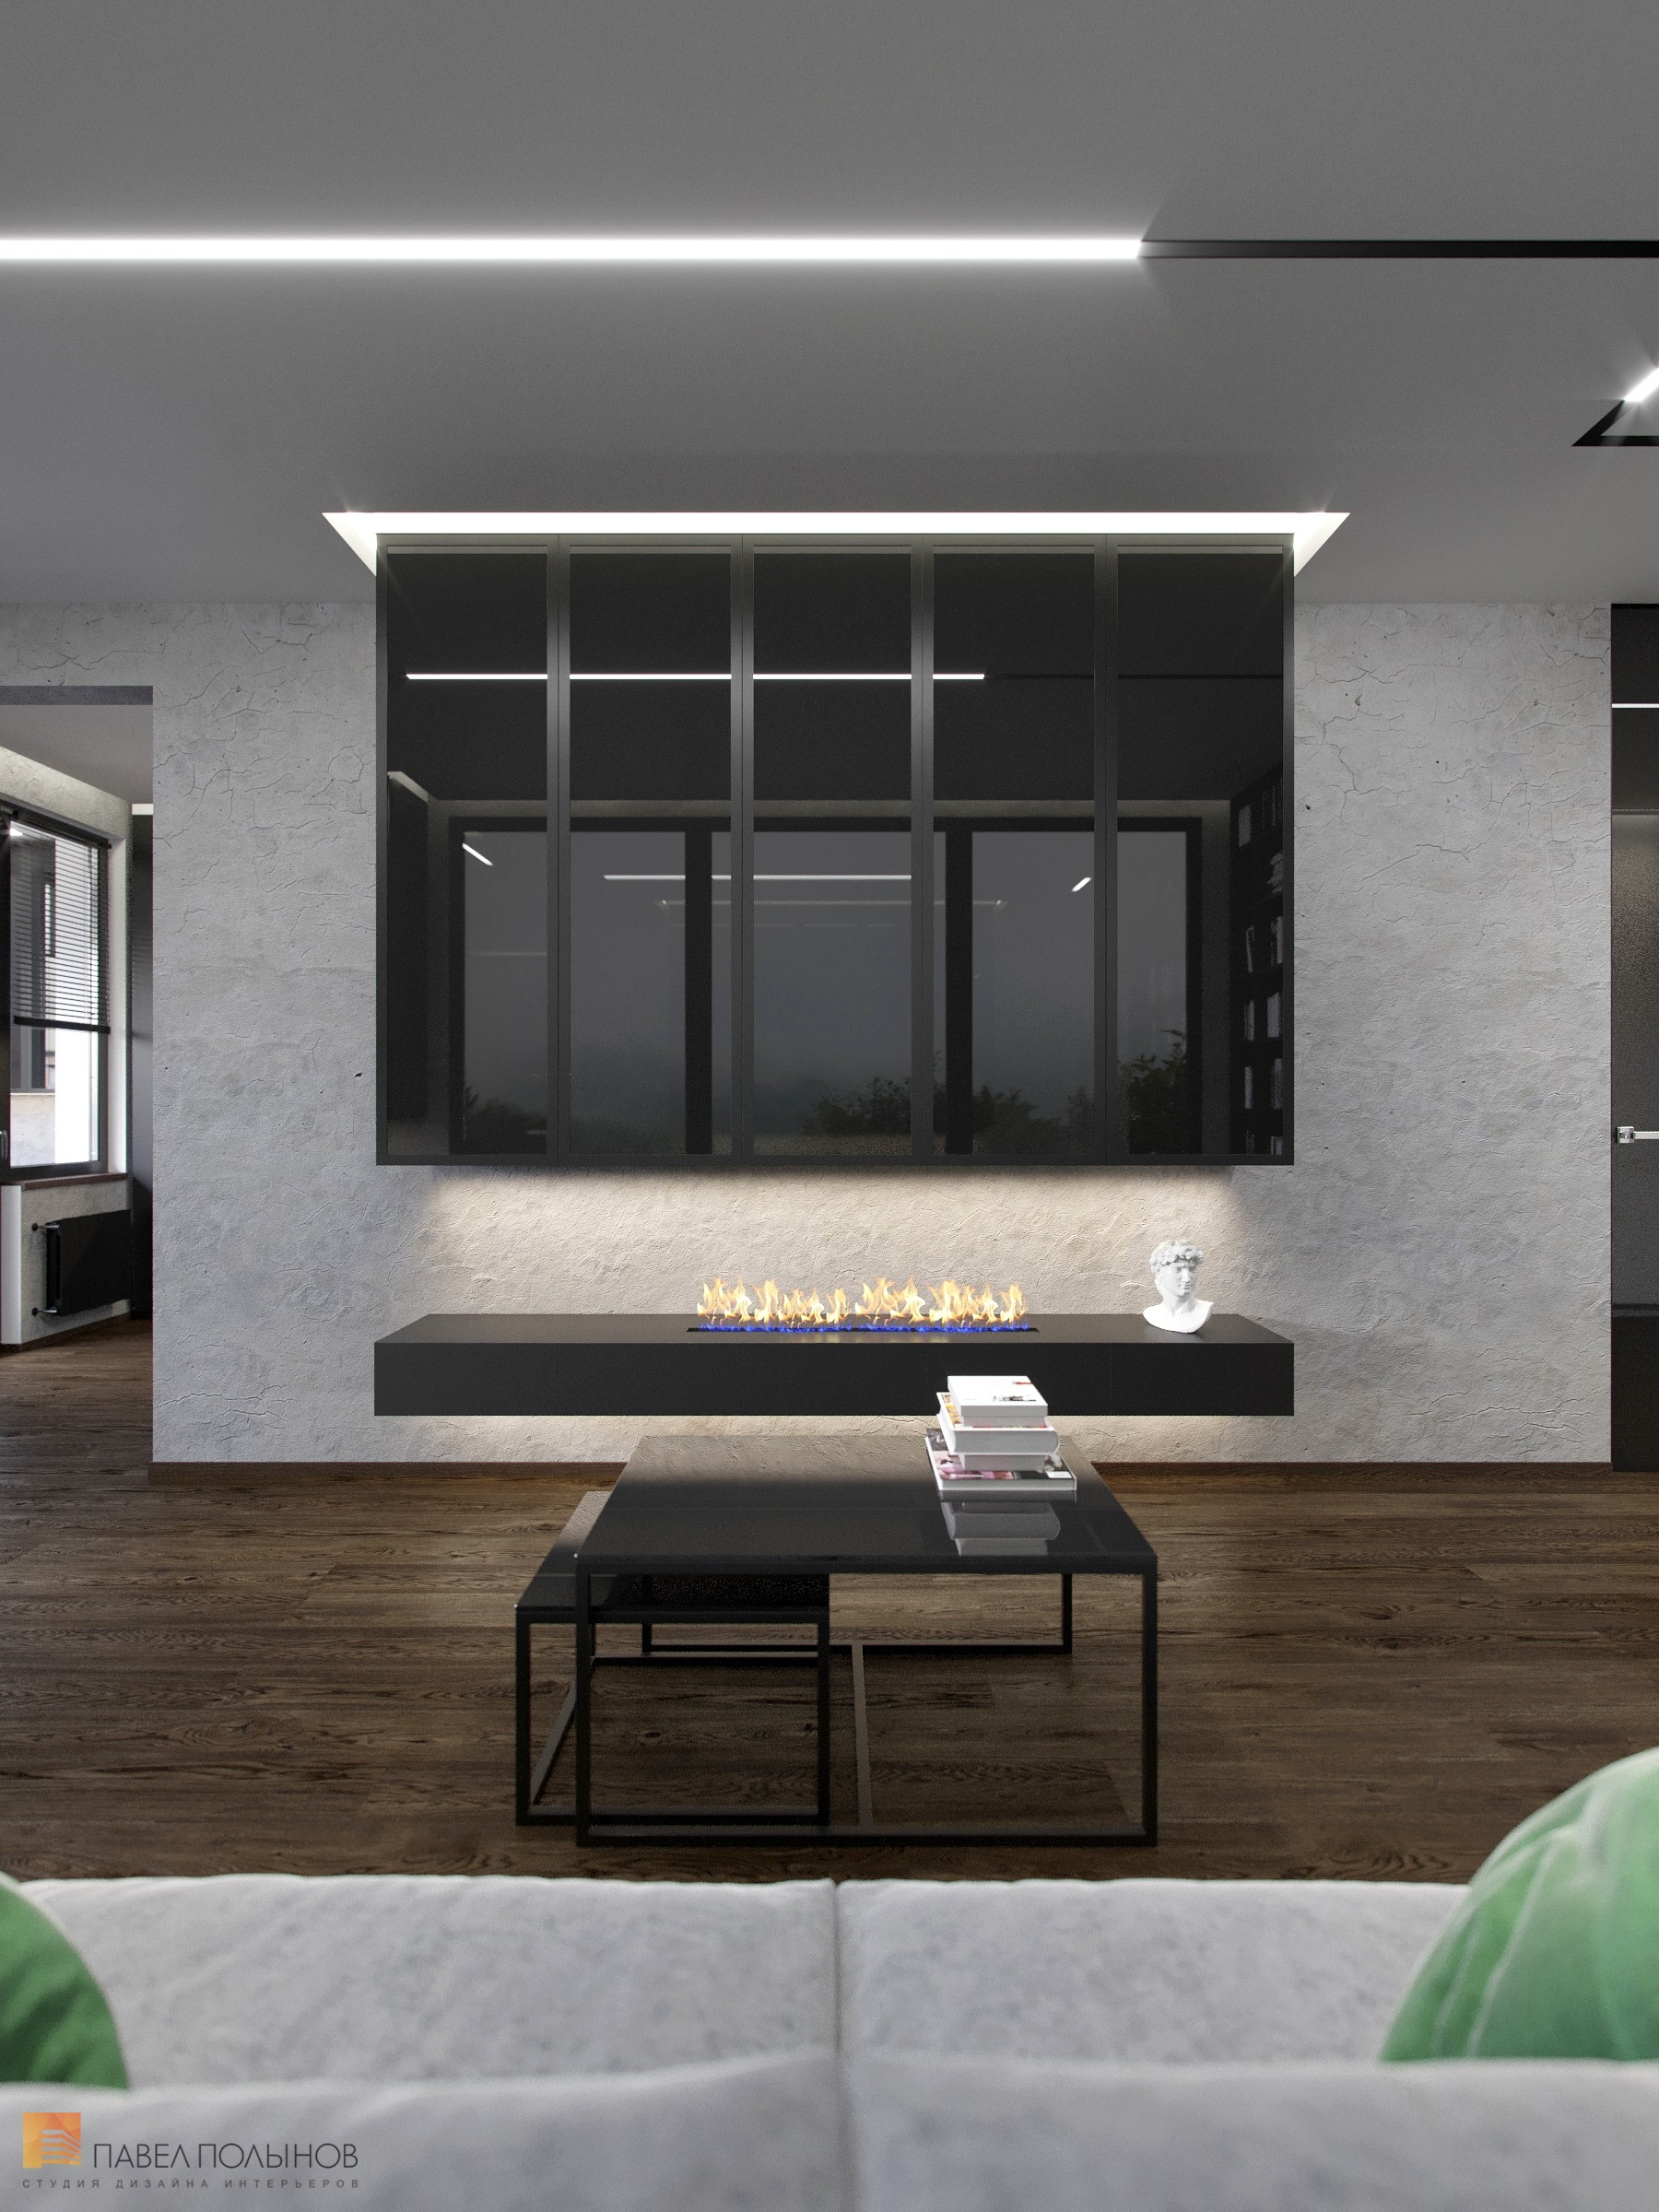 Фото дизайн гостиной из проекта «Интерьер квартиры-евродвушки в стиле минимализм, ЖК «Европа Сити», 72 кв.м.»